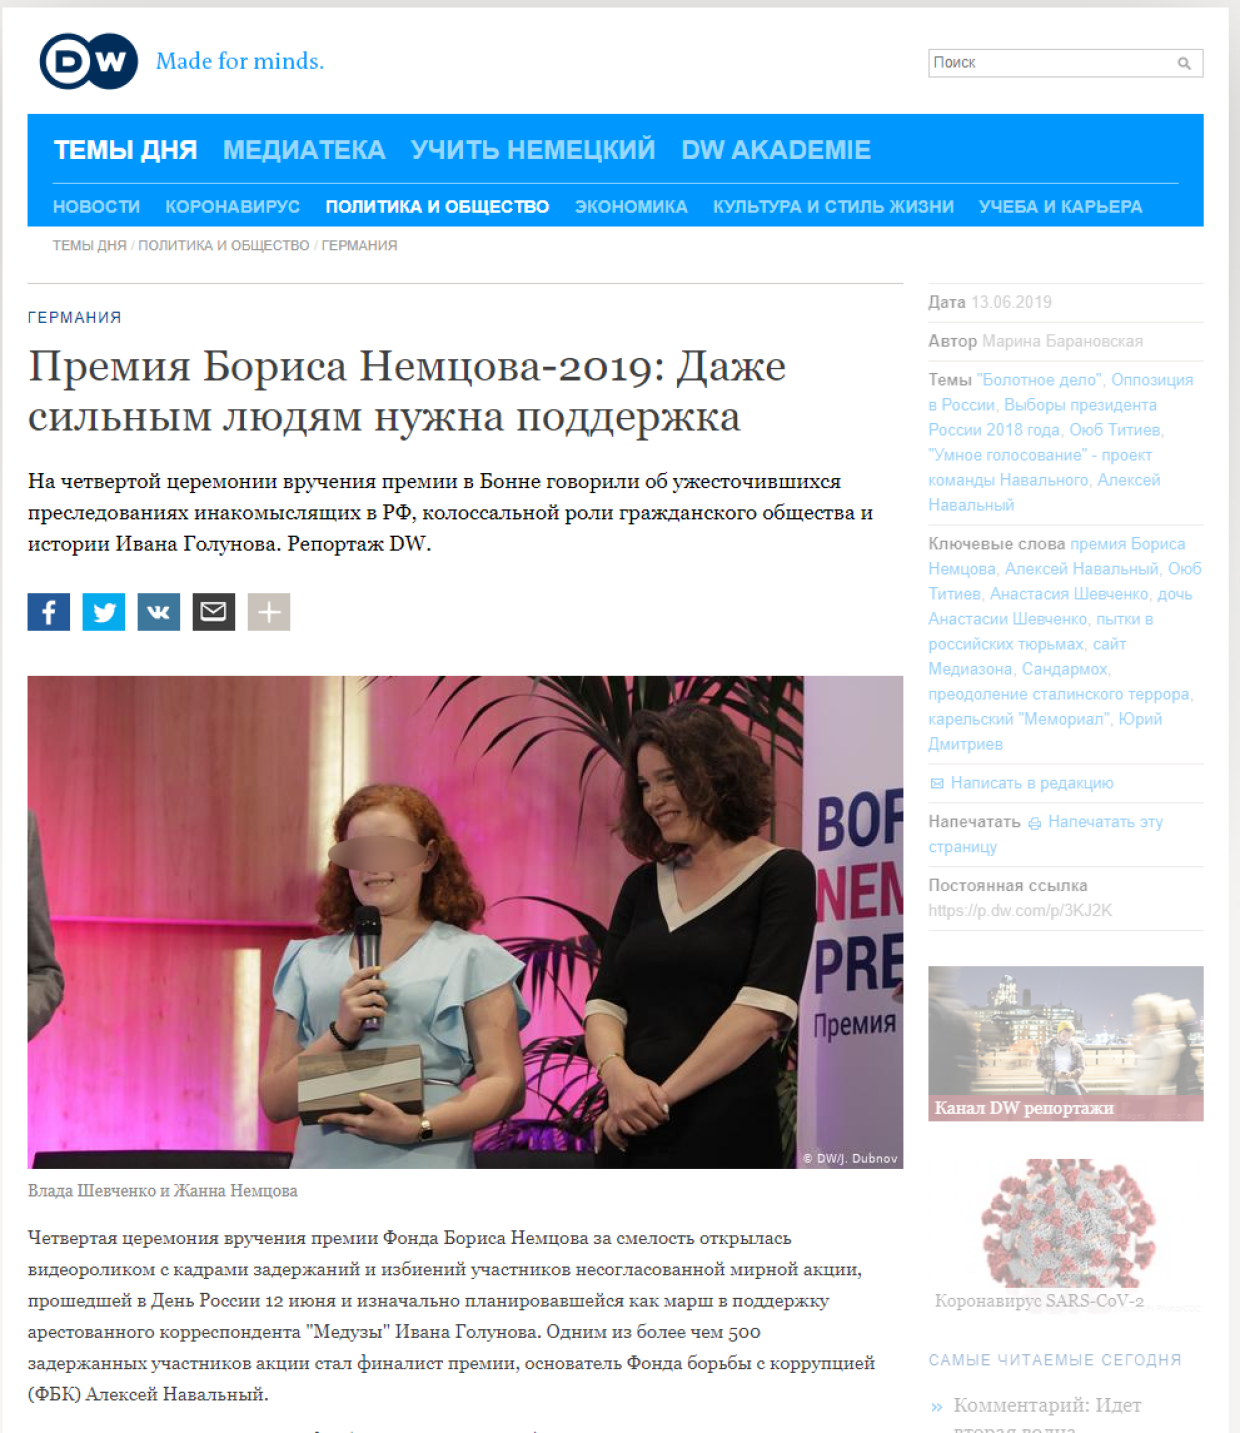 Влада Шевченко получает за мать премию Бориса Немцова